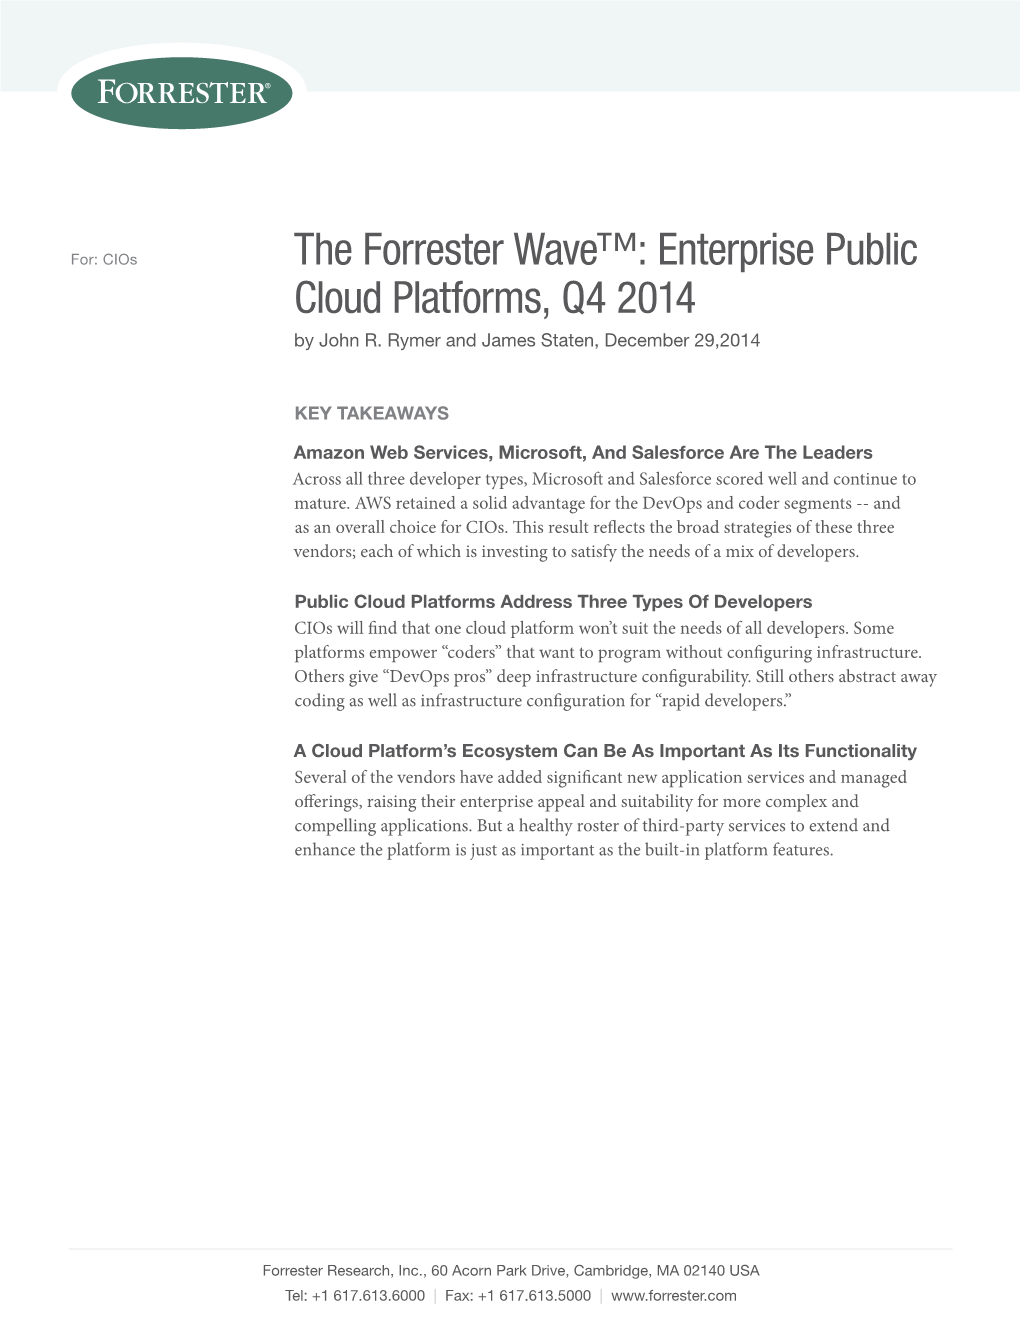 The Forrester Wave™: Enterprise Public Cloud Platforms, Q4 2014 by John R